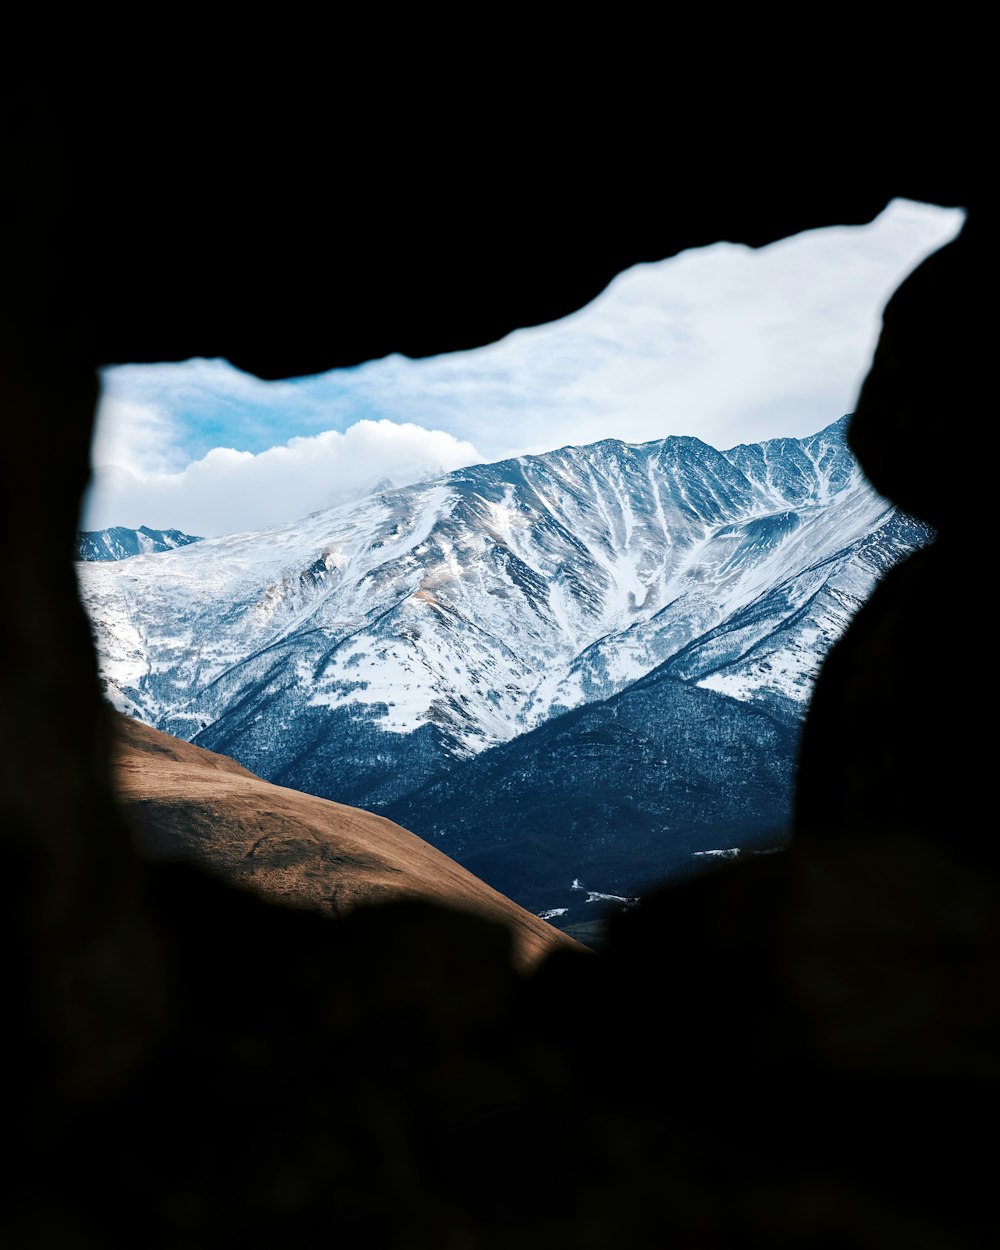 Una vista de una cadena montañosa a través de un agujero en una roca